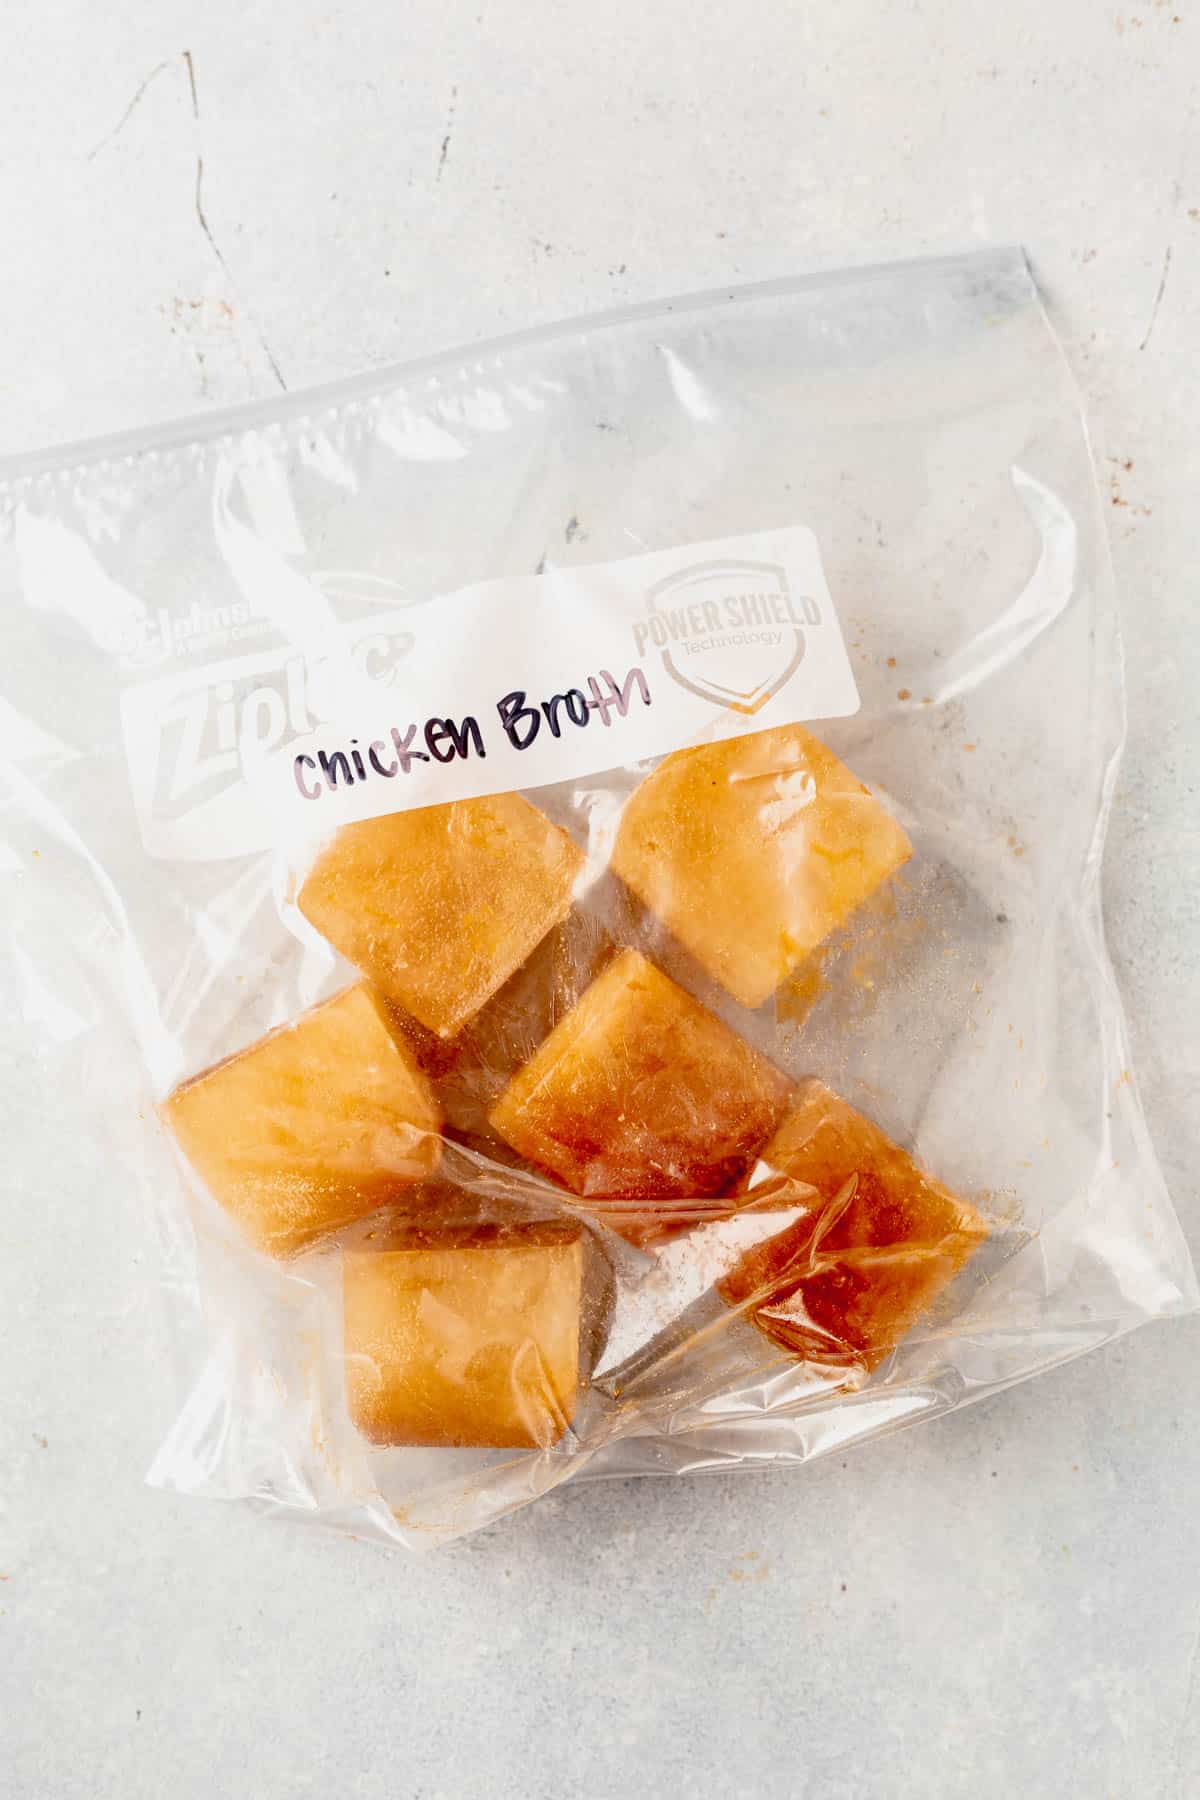 frozen chicken broth in a freezer bag